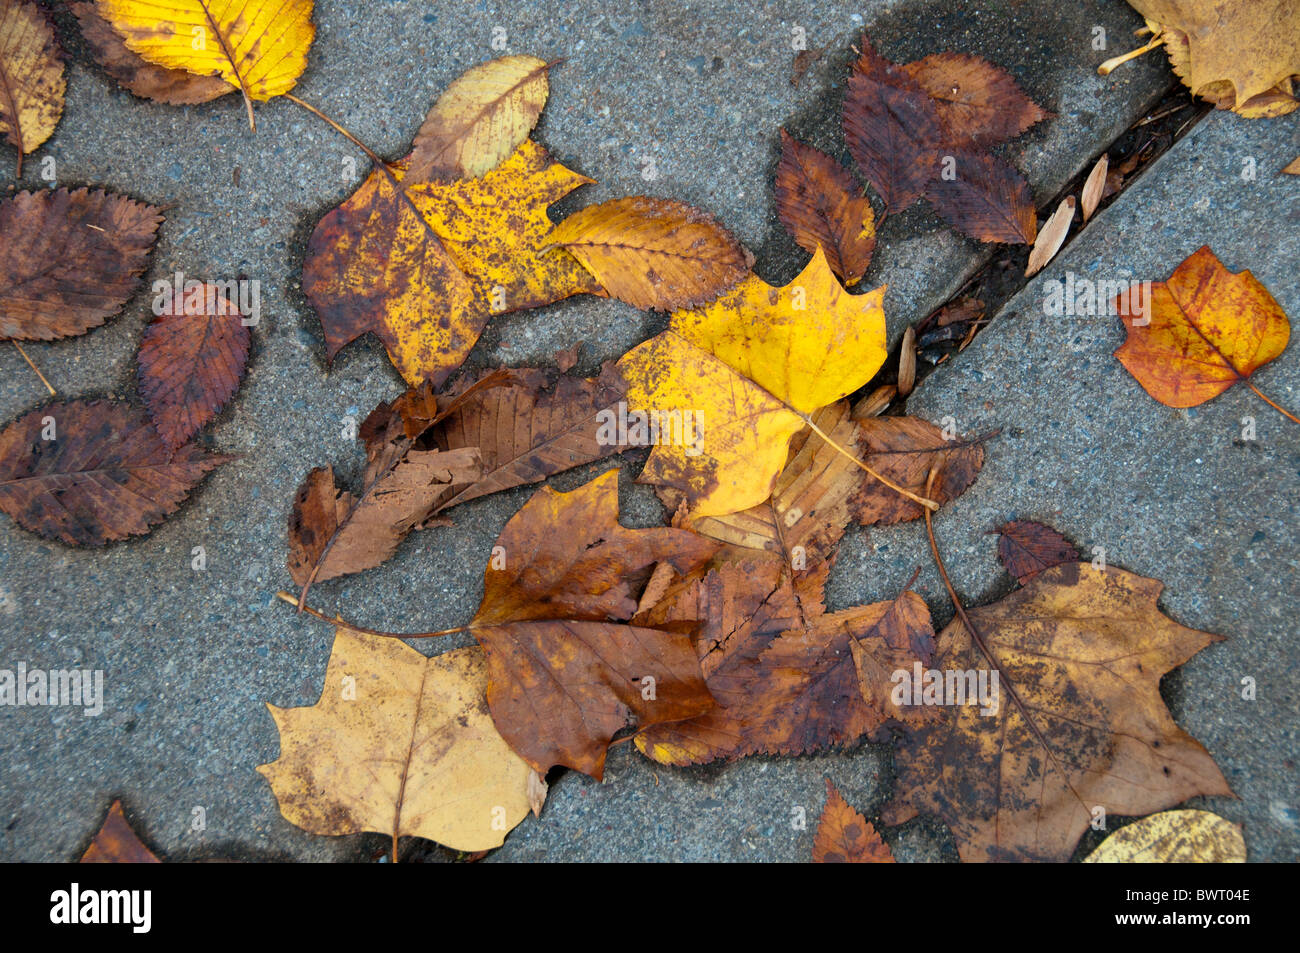 Autumn leaves on sidewalk. Stock Photo